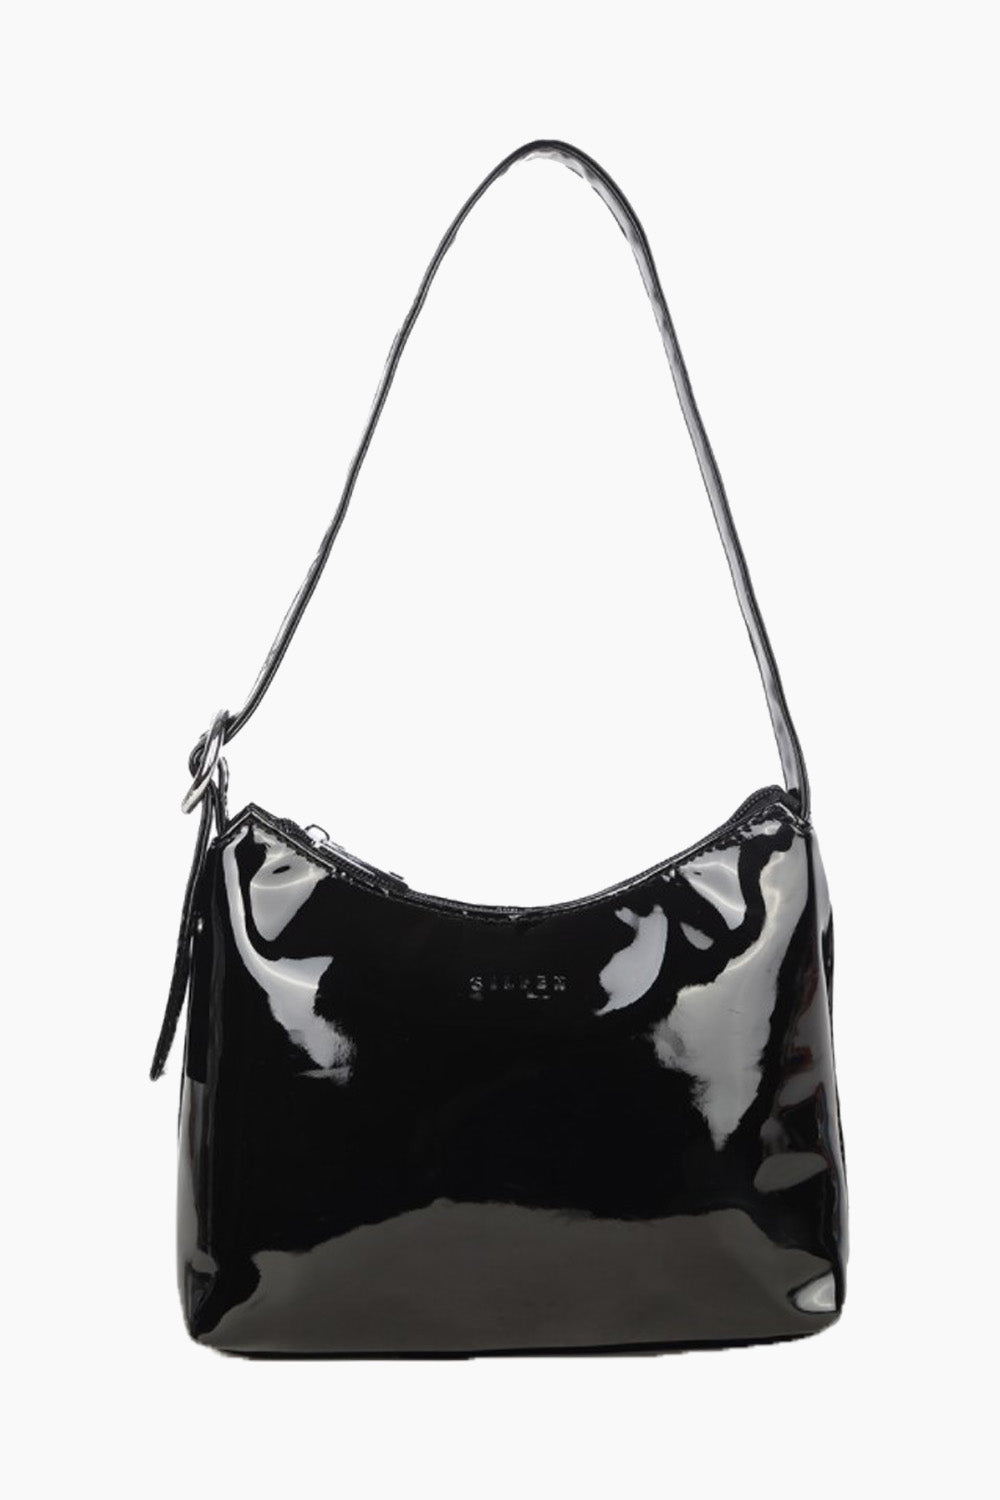 Ulrikke Shoulder Bag - Black Lacquer Studio - One Size fra Daniel Silfen til 350.00 DKK